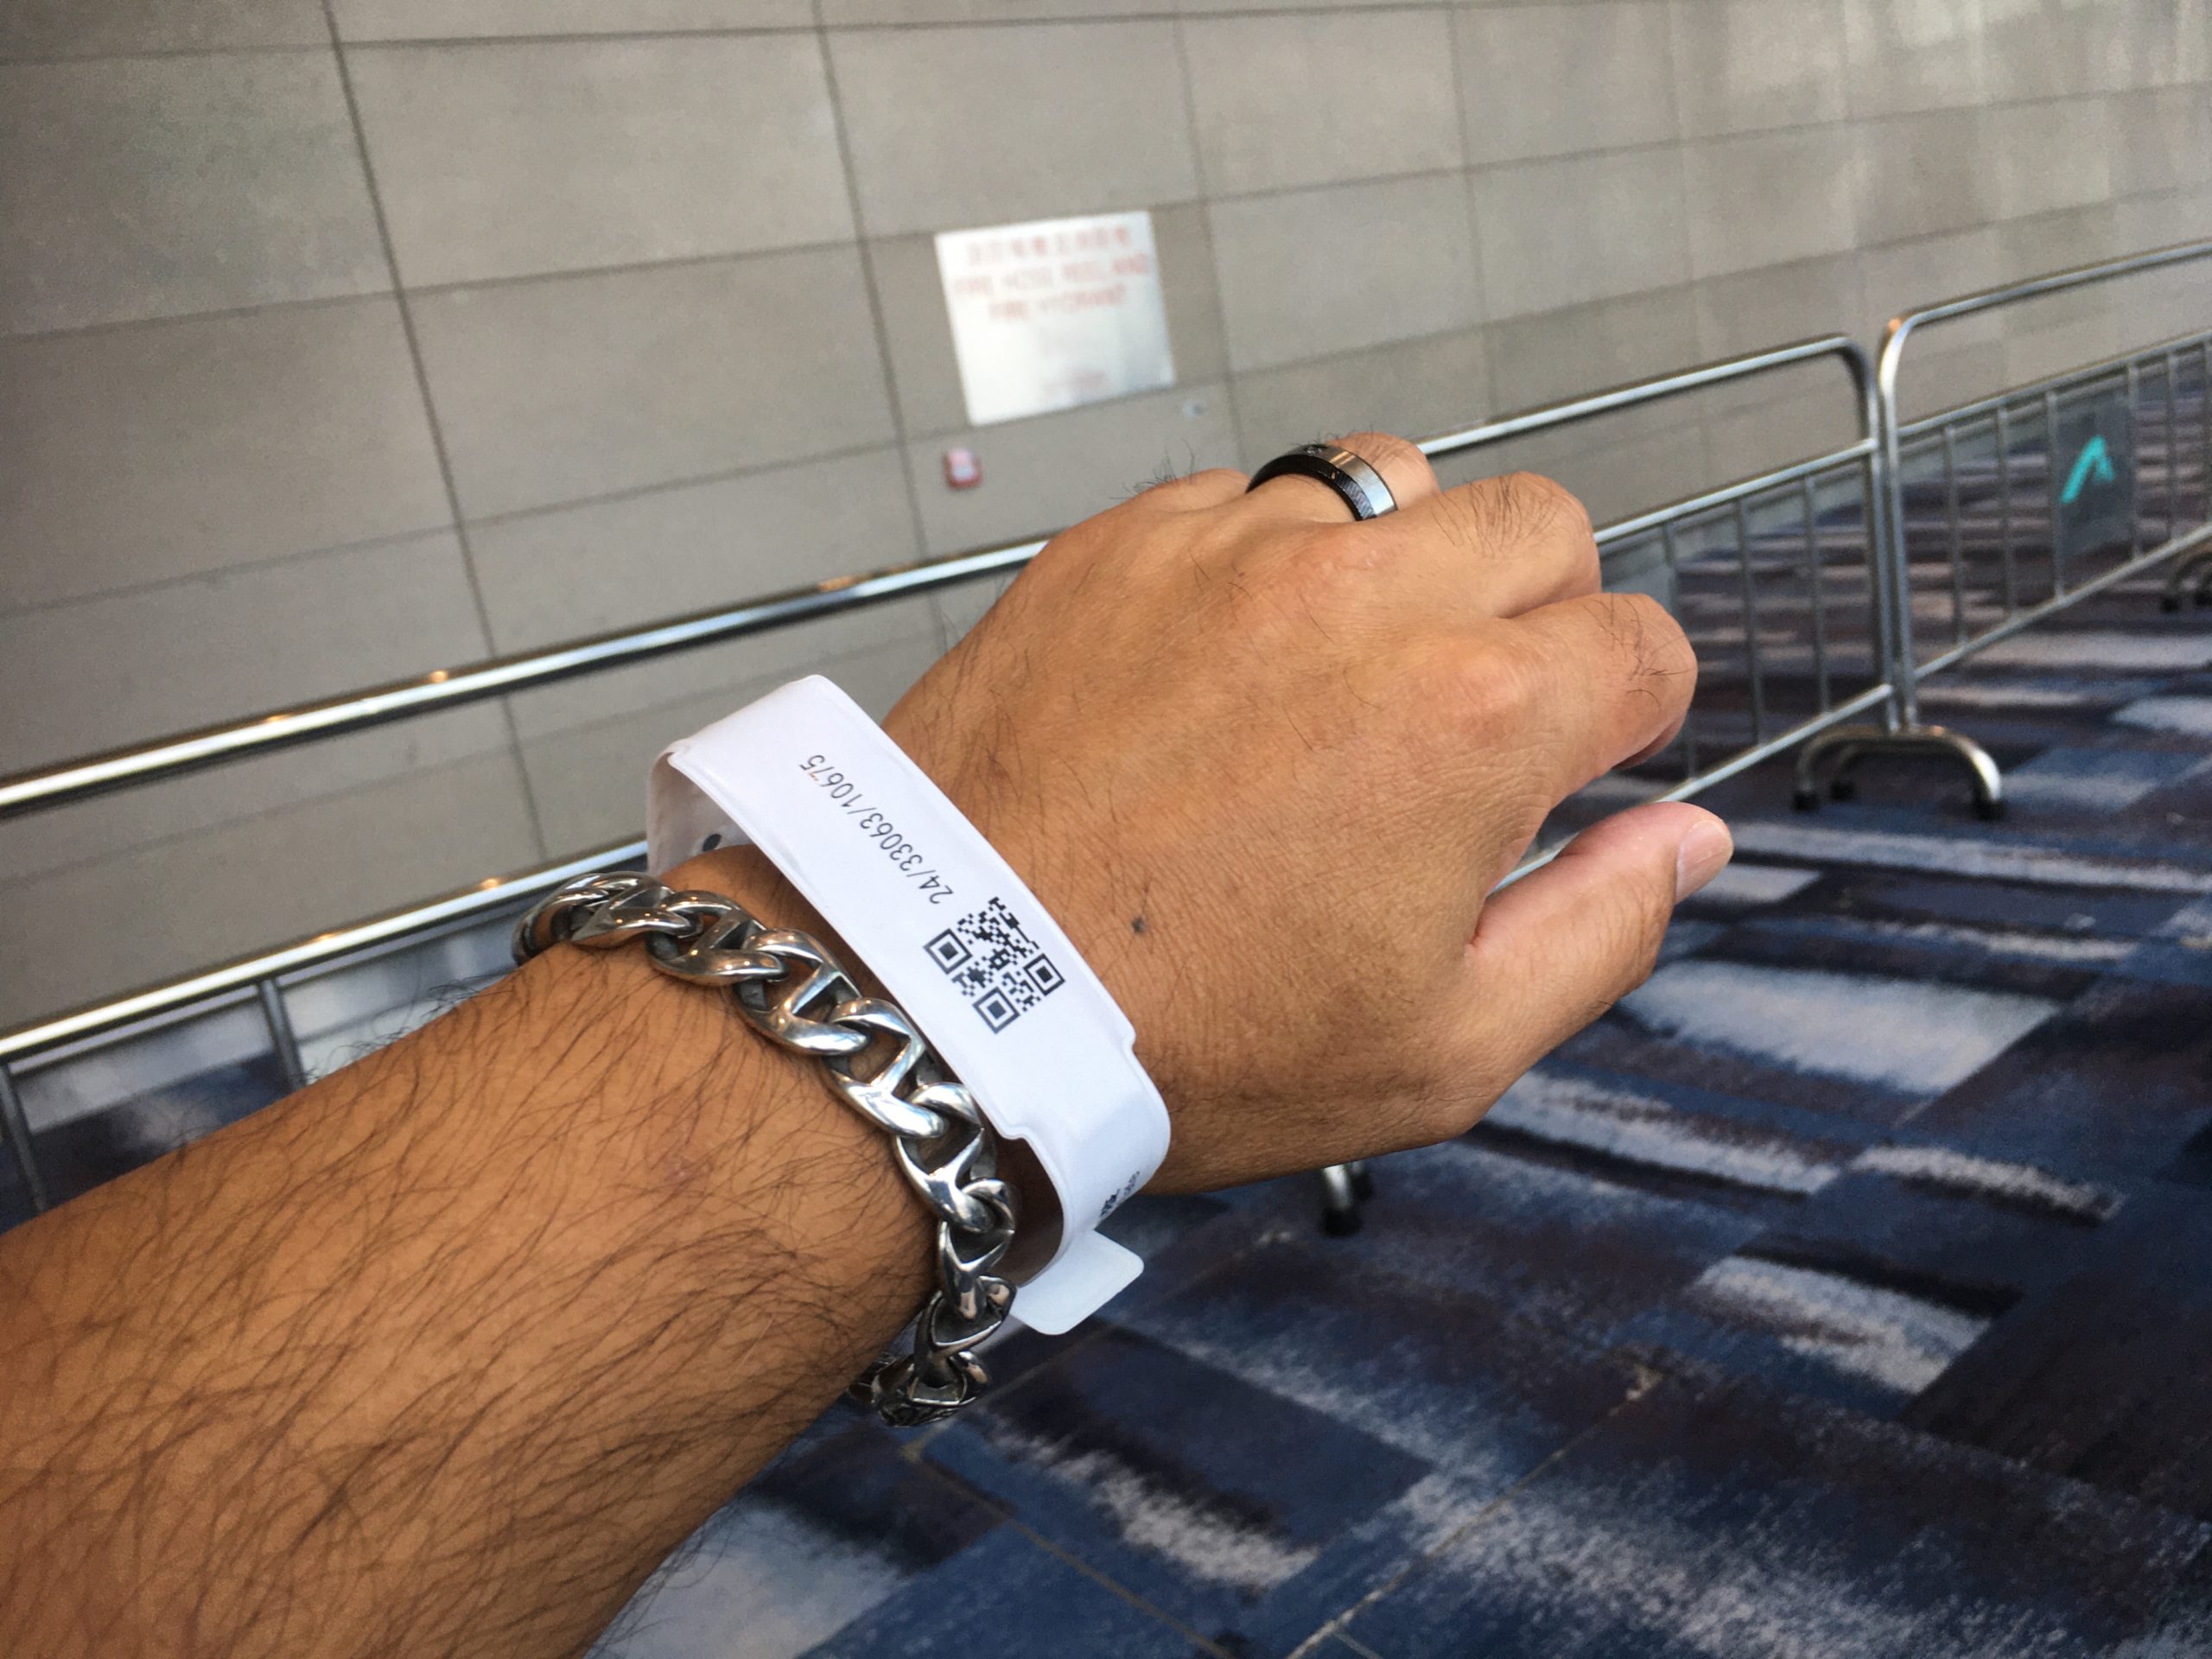 日本からの香港入境 “GPS Wrist Band” at HK airport